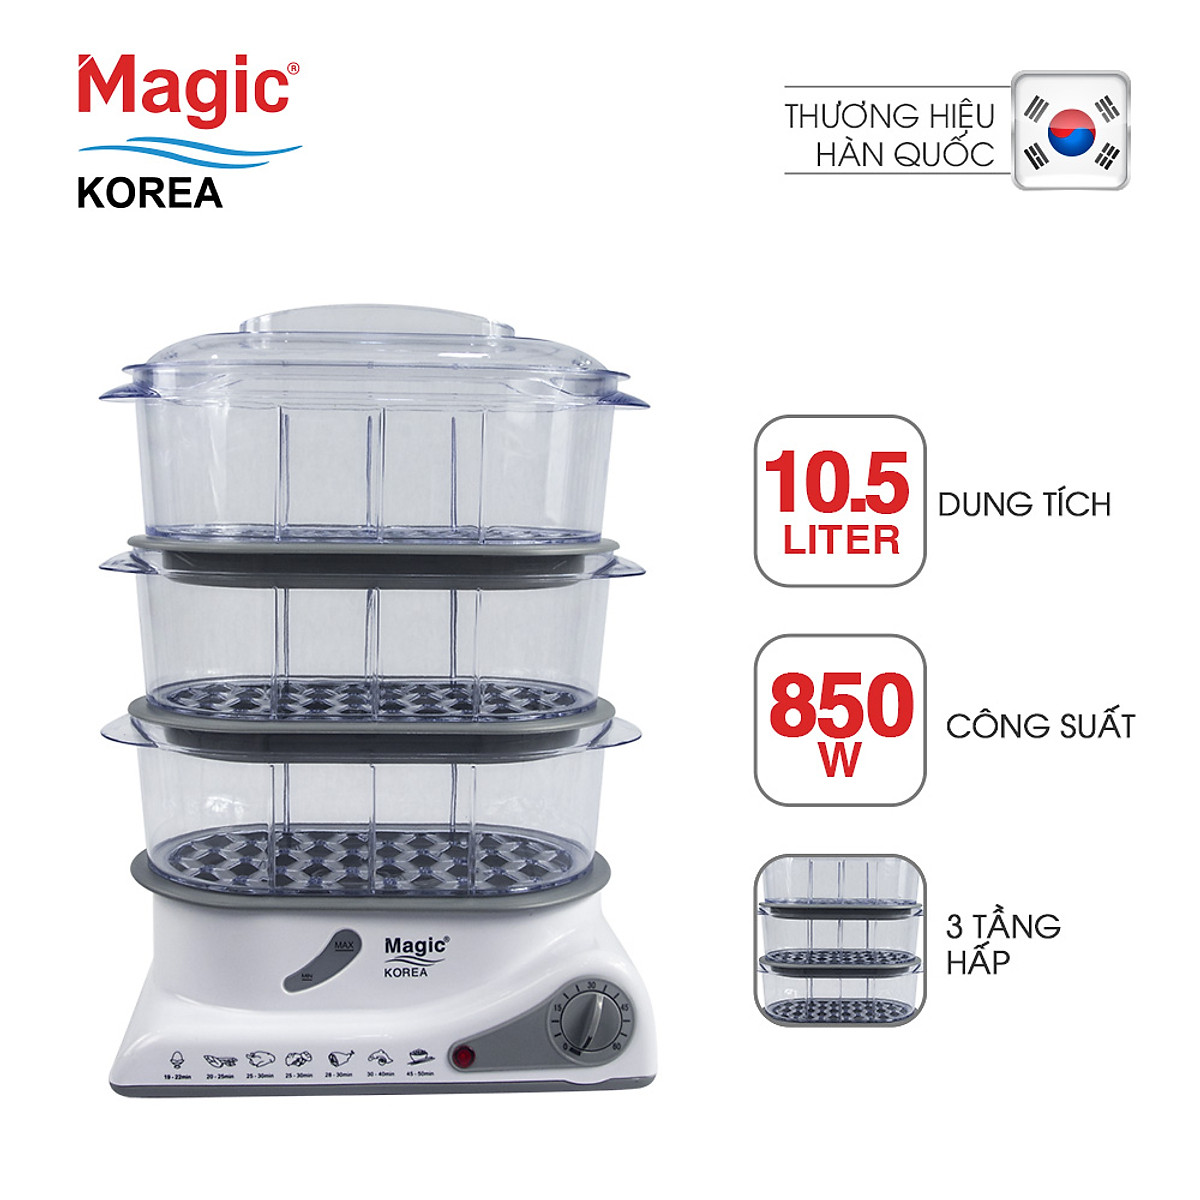 Máy Hấp Thực Phẩm Đa Năng 3 Tầng Magic Korea A61